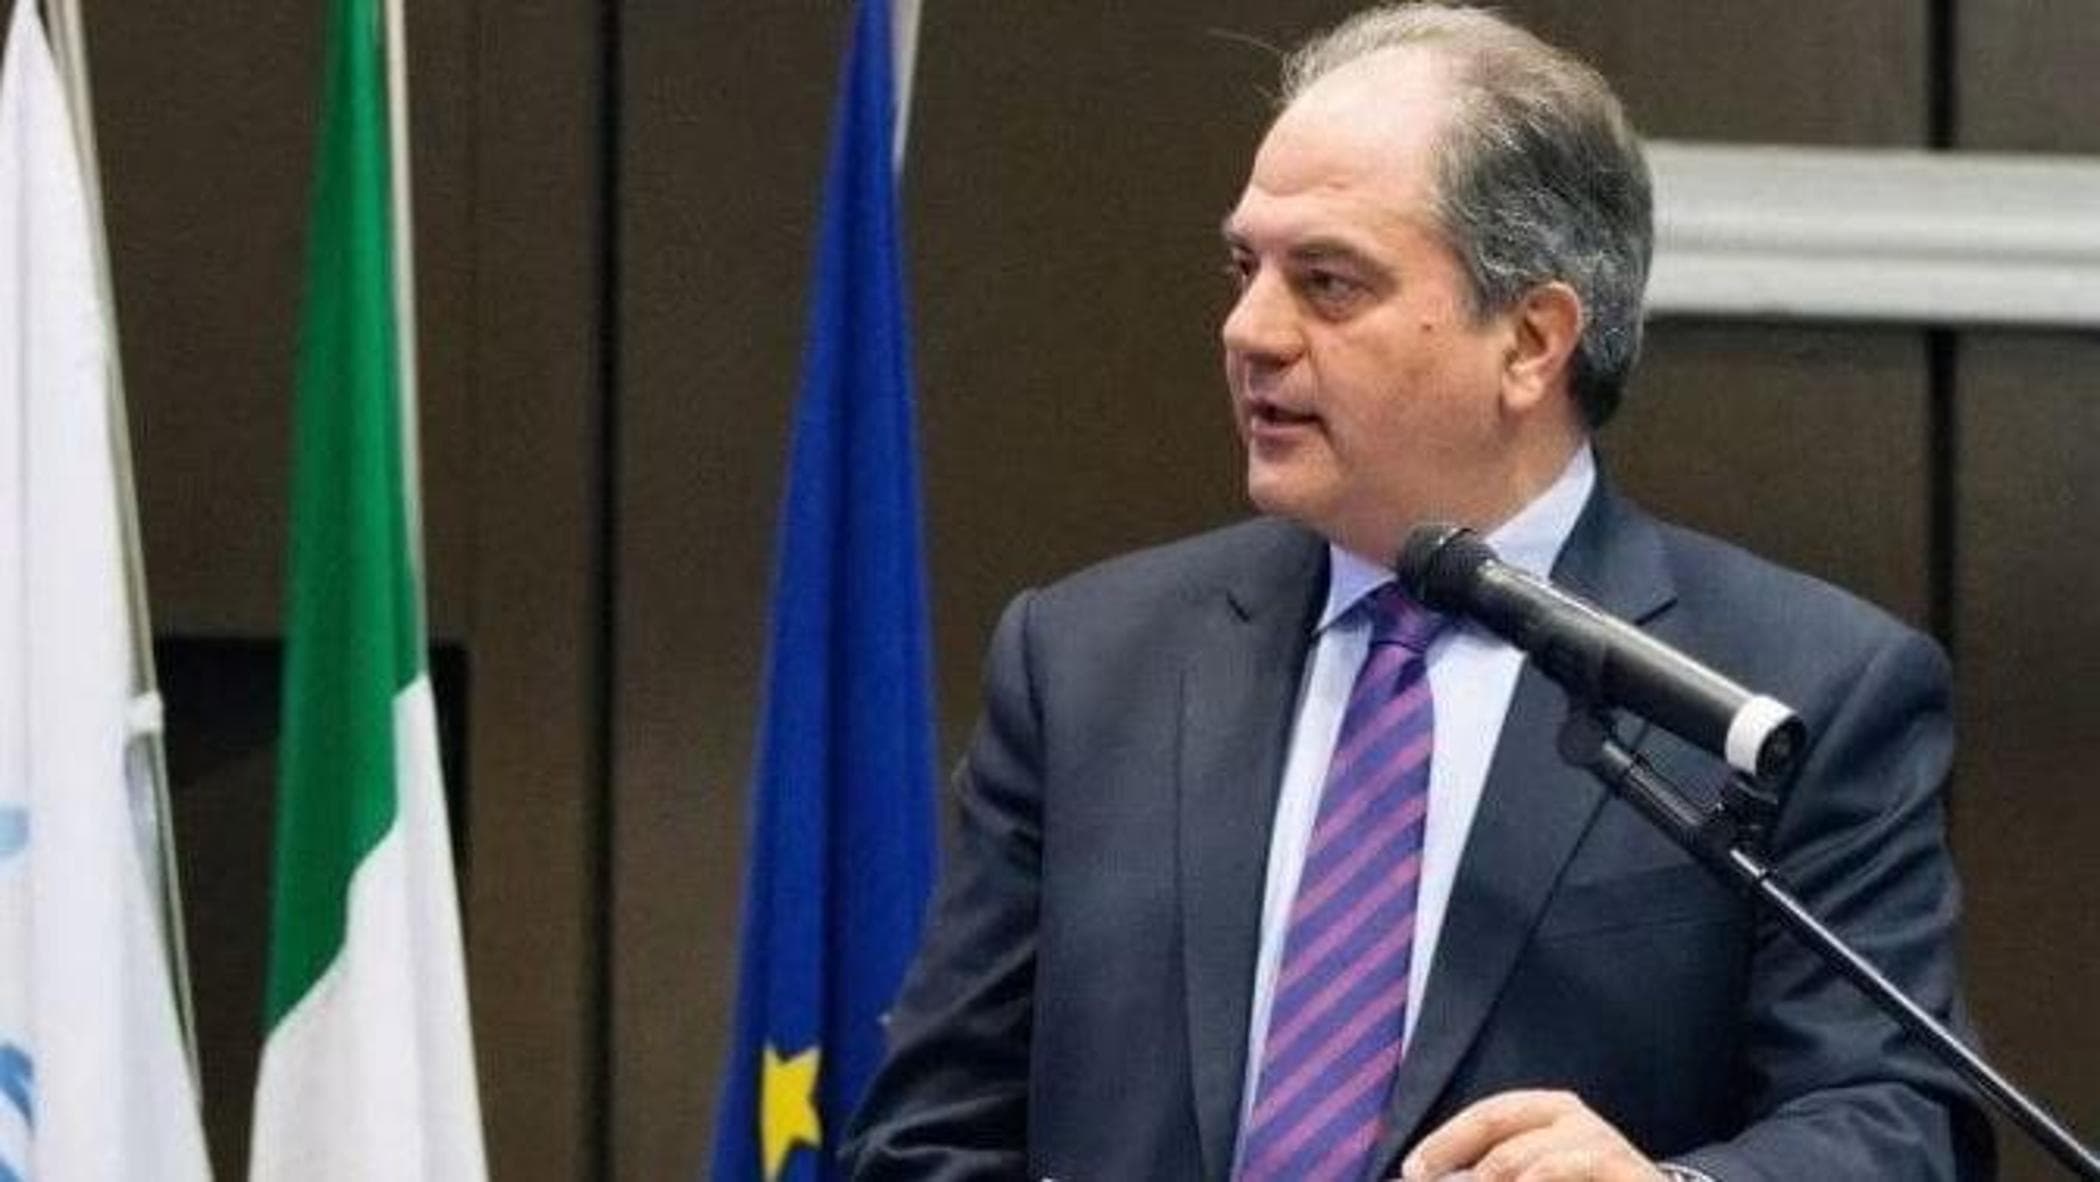 L’ex sottosegretario Giuseppe Castiglione dice addio ad Azione e passa con Forza Italia